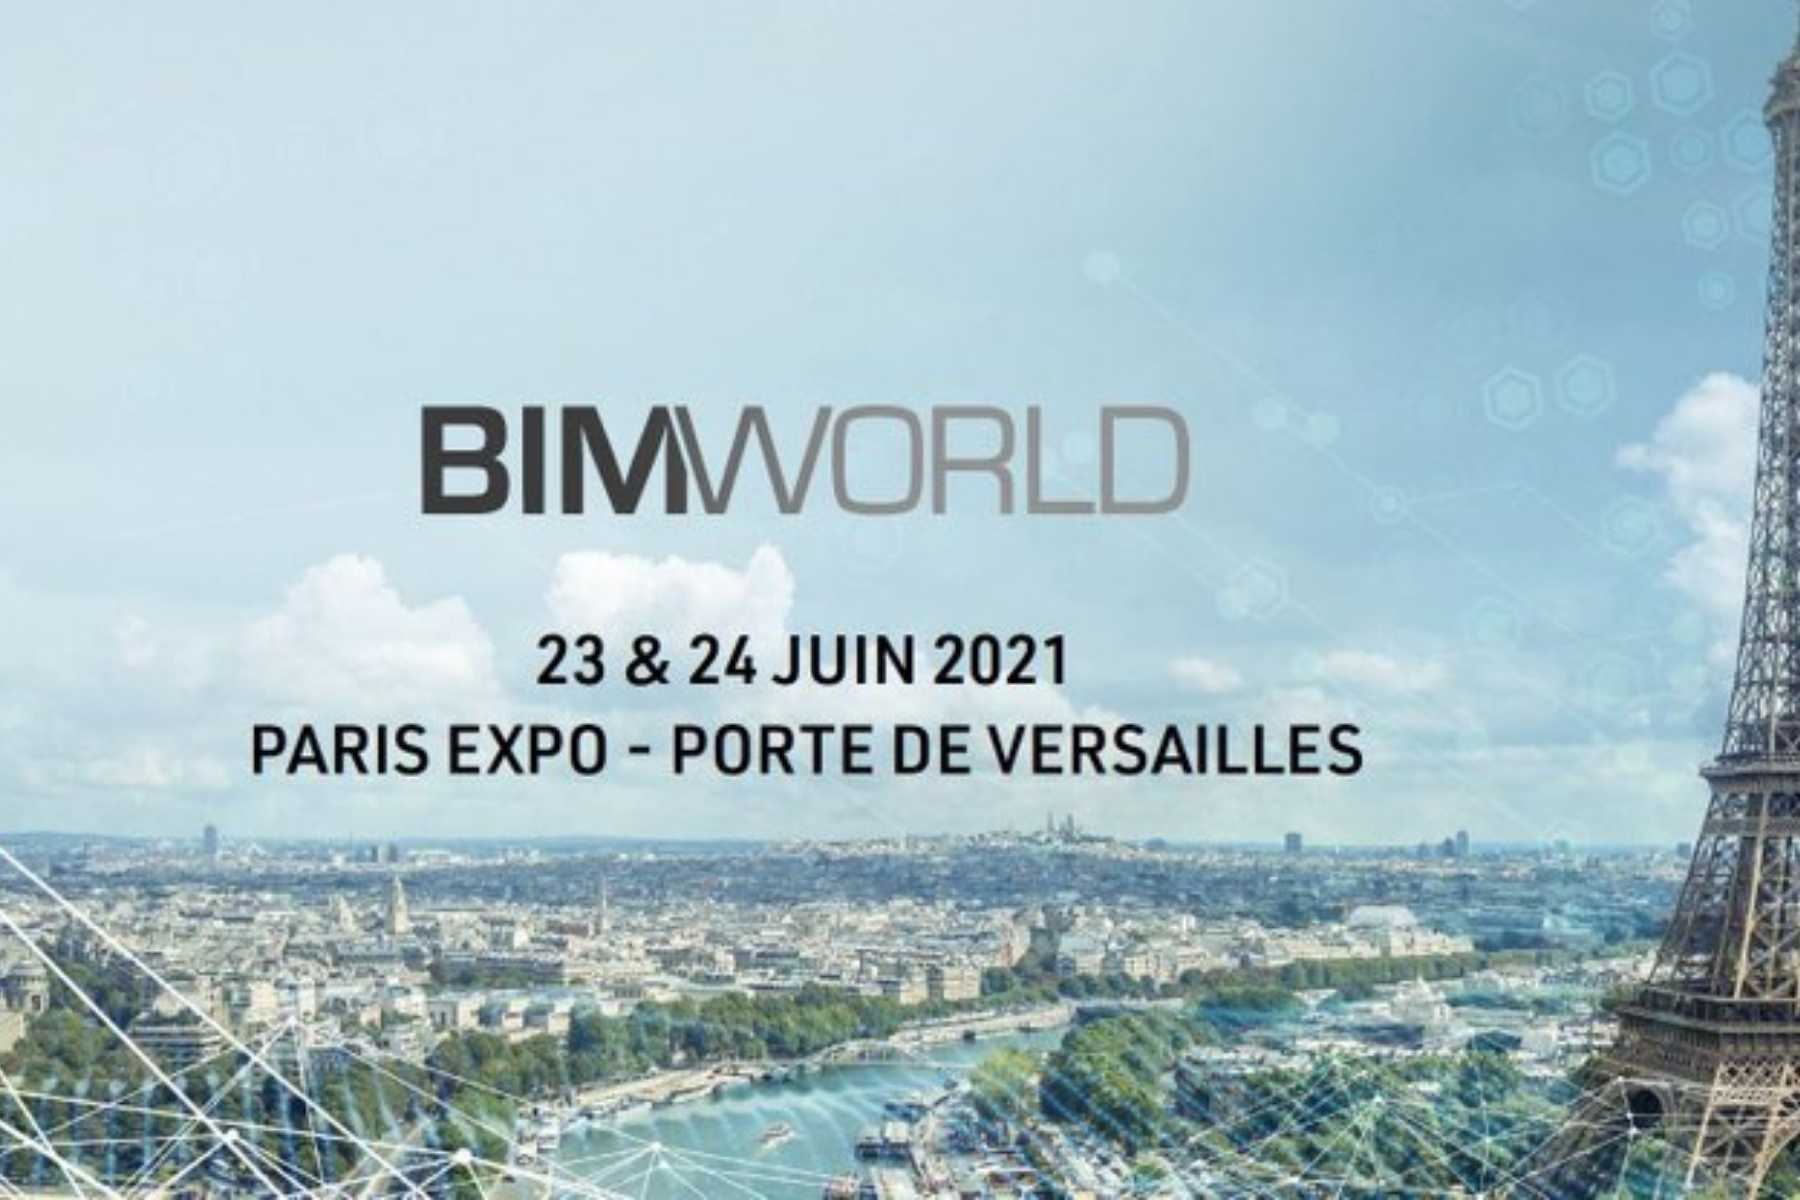 Article L’ILV au BIM World Paris 2021